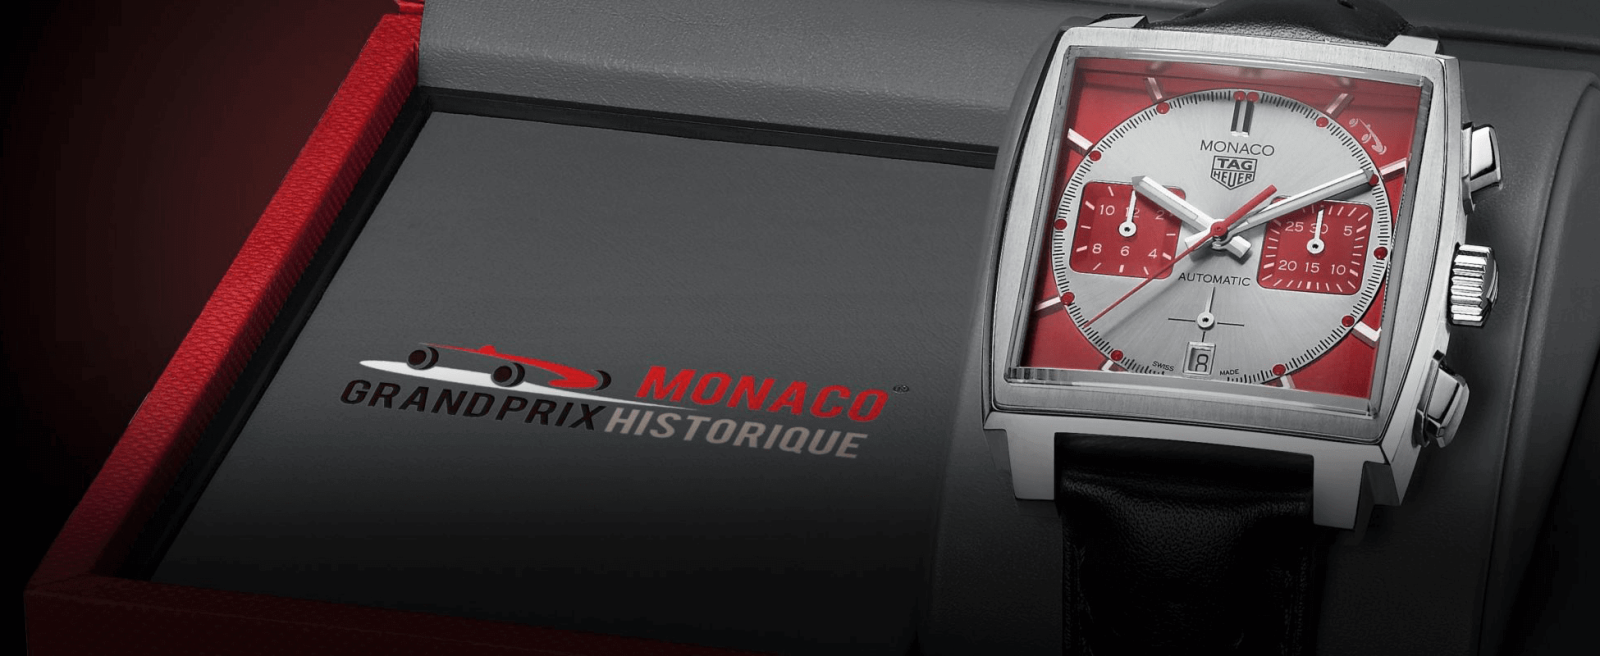 đồng hồ nam automatic mặt vuông TAG Heuer Monaco Grand Prix de Monaco Historique Limited Edition